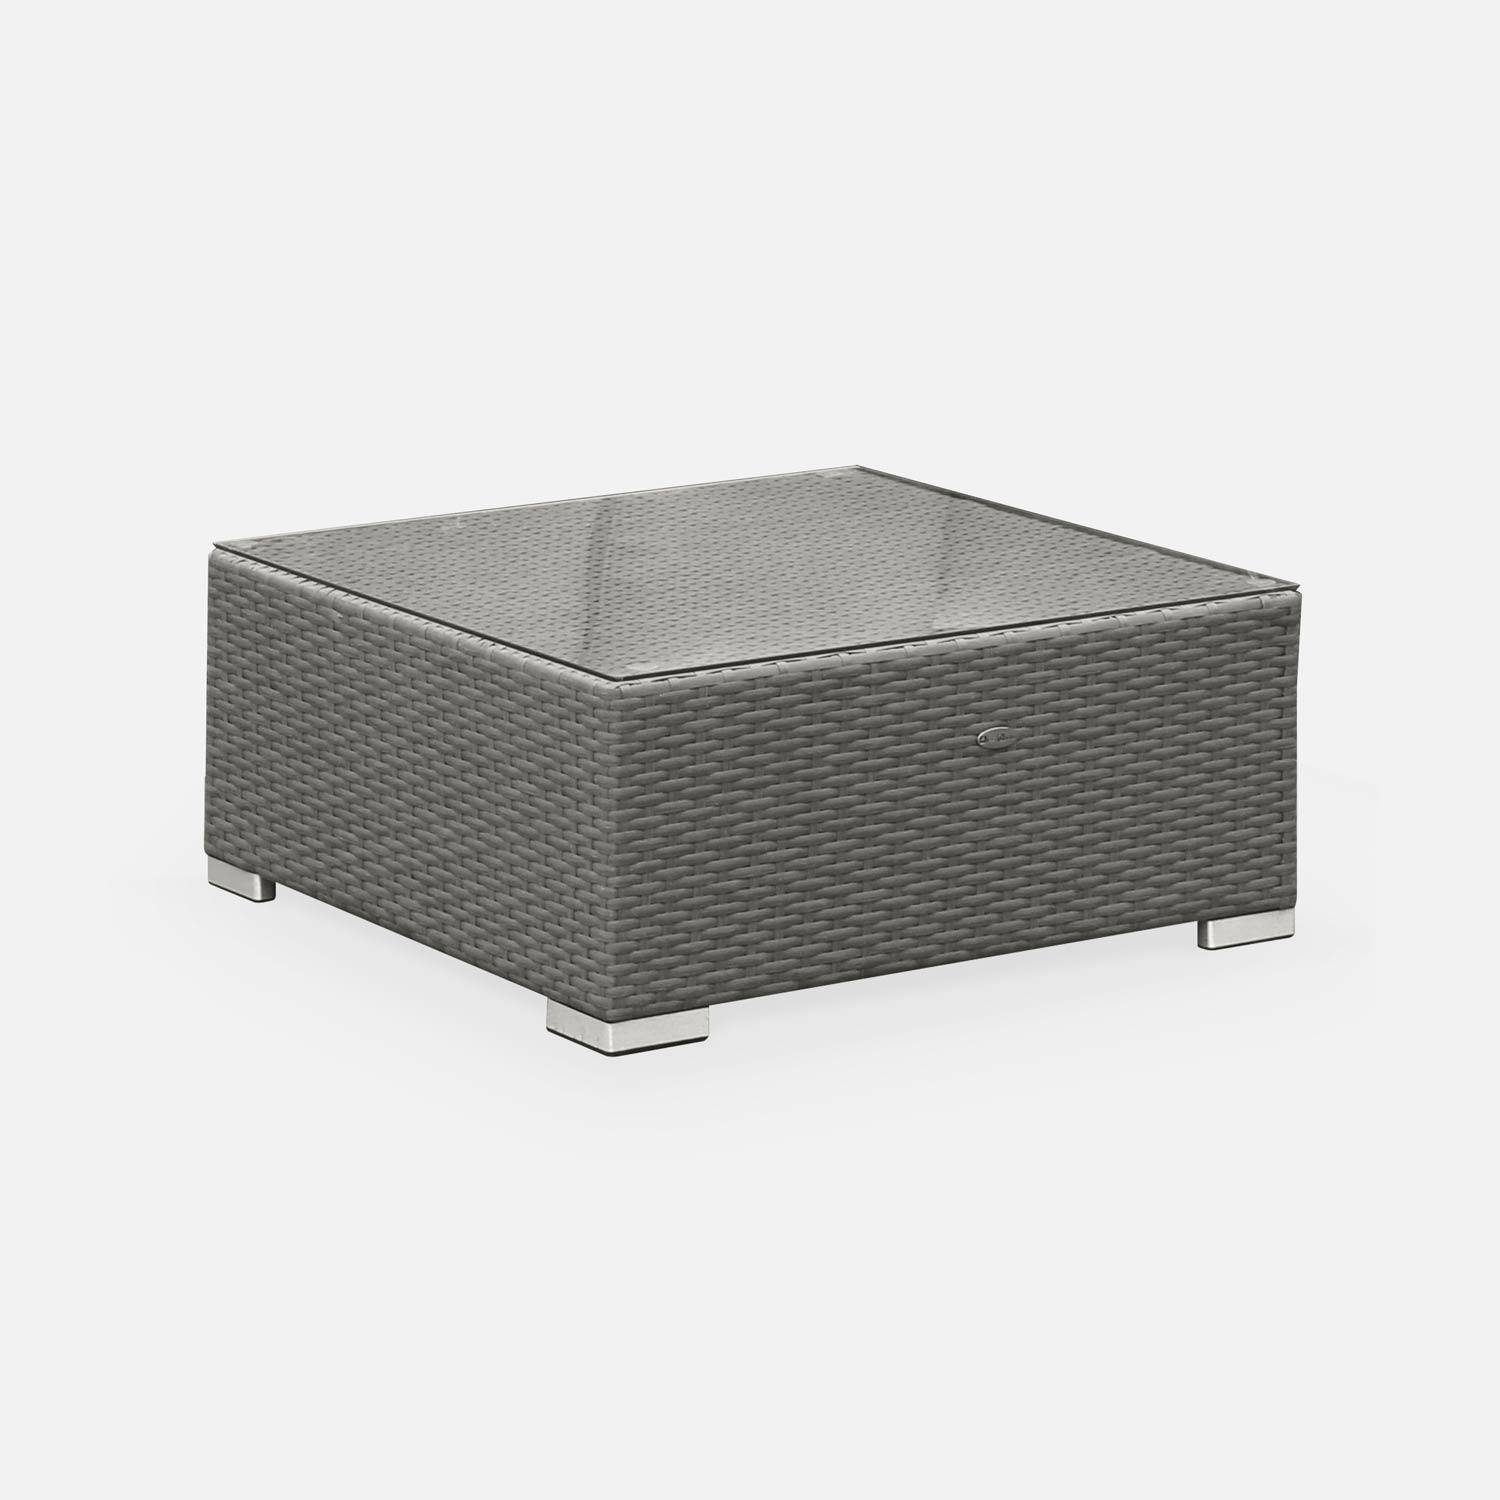 Gartengarnitur aus Kunststoffrattan - Napoli - grau, graumelierte Kissen - 5 Sitze - 2 Sessel ohne Armlehnen, 3 Ecksessel, ein Couchtisch Photo4